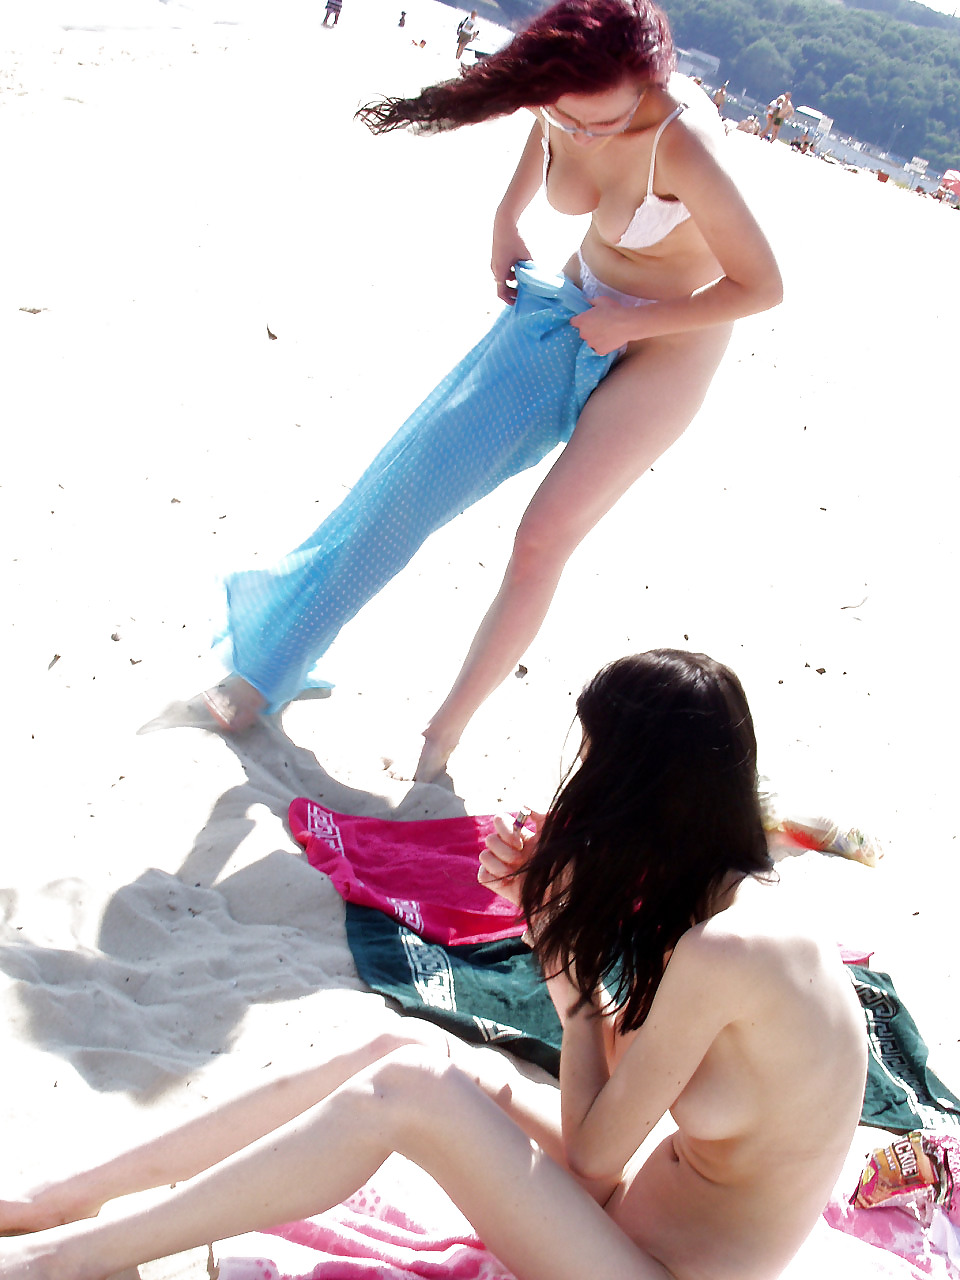 Sex Nude Beach image